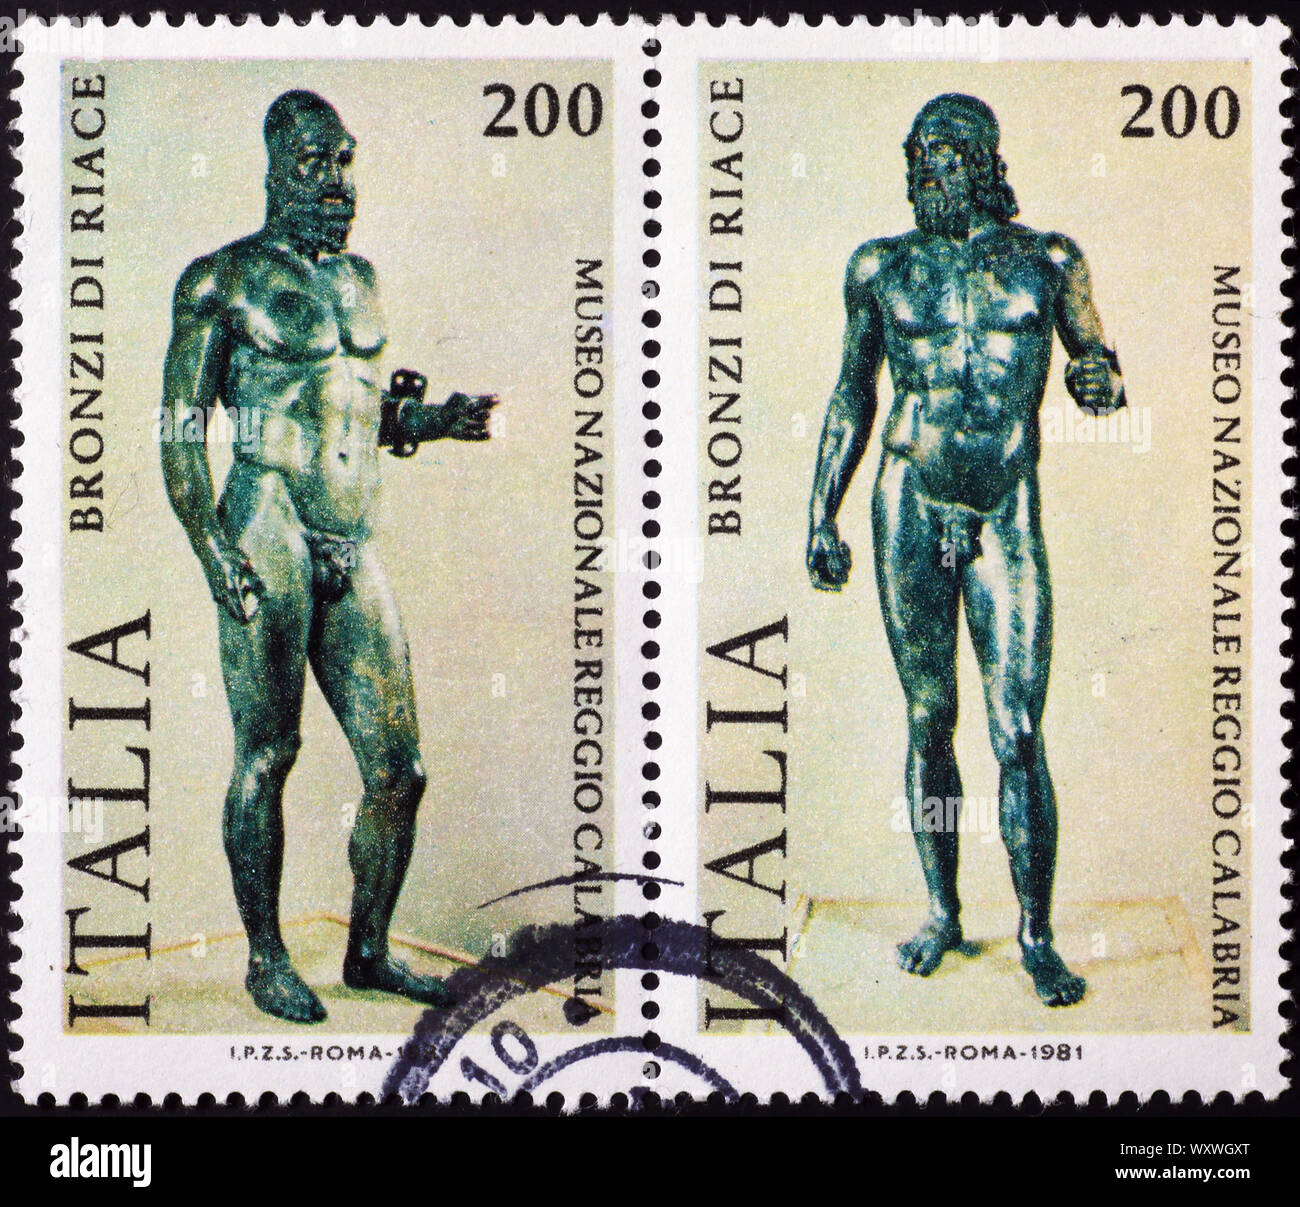 Los bronces de Riace en sellos italianos Foto de stock